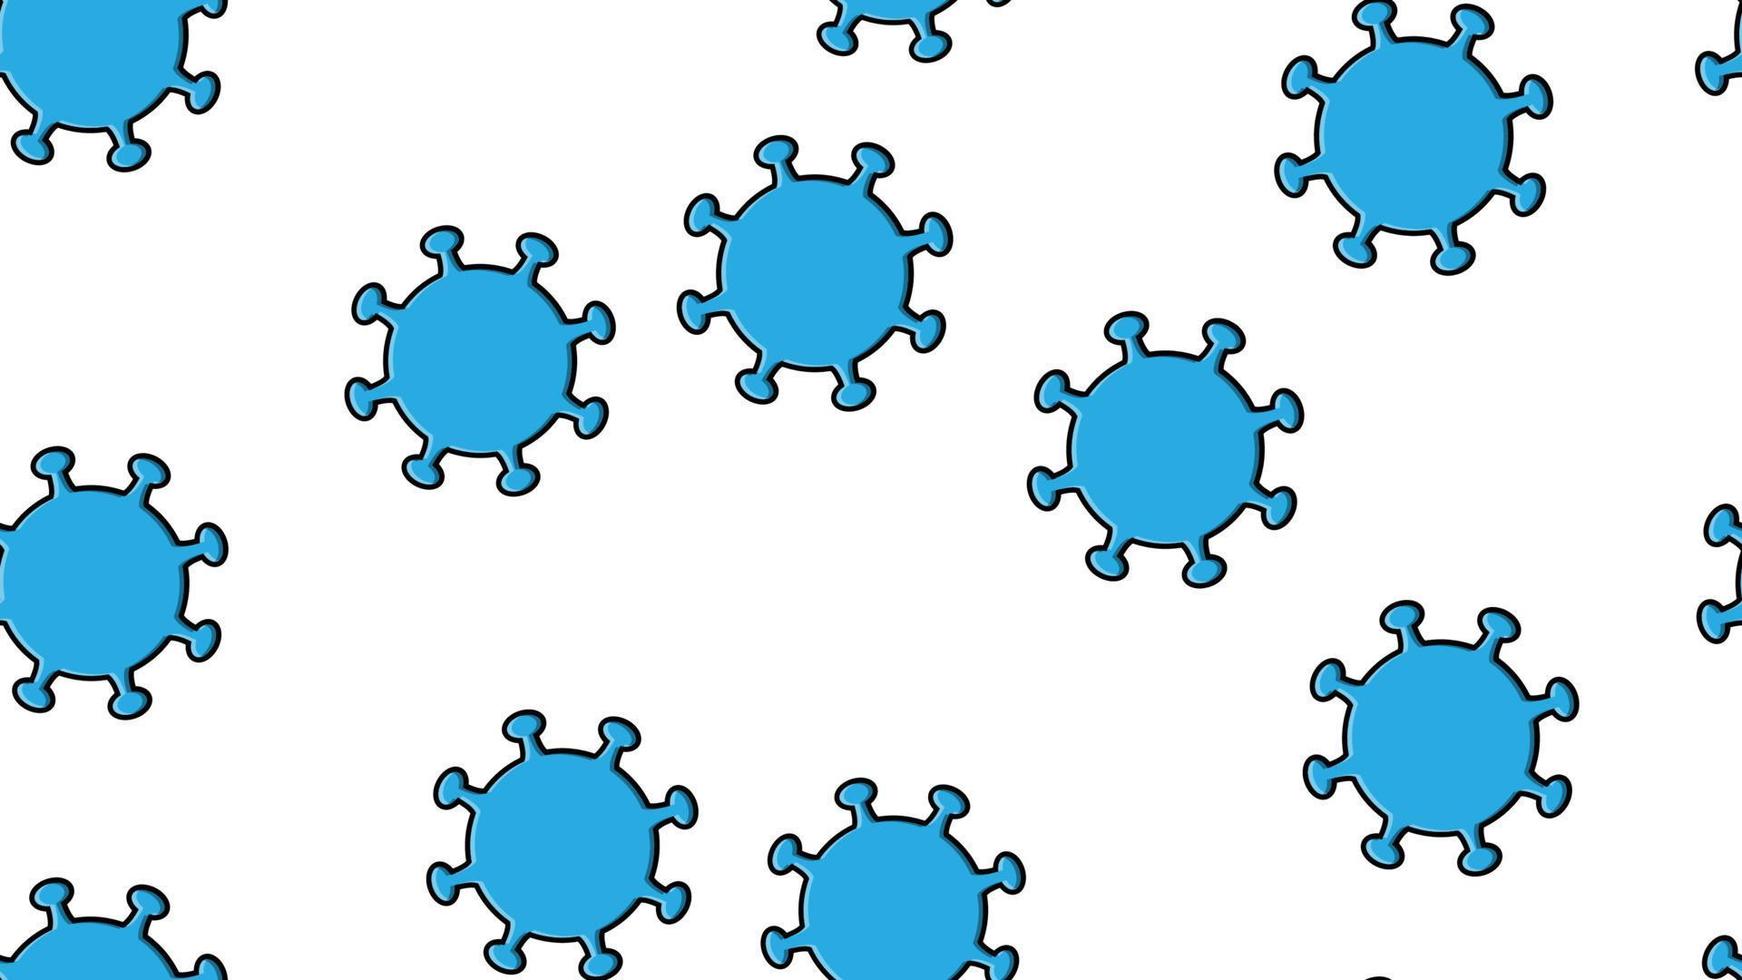 modèle harmonieux sans fin d'épidémie pandémique de coronavirus respiratoires mortels infectieux bleus dangereux, virus microbes covid-19 provoquant une pneumonie sur fond blanc vecteur